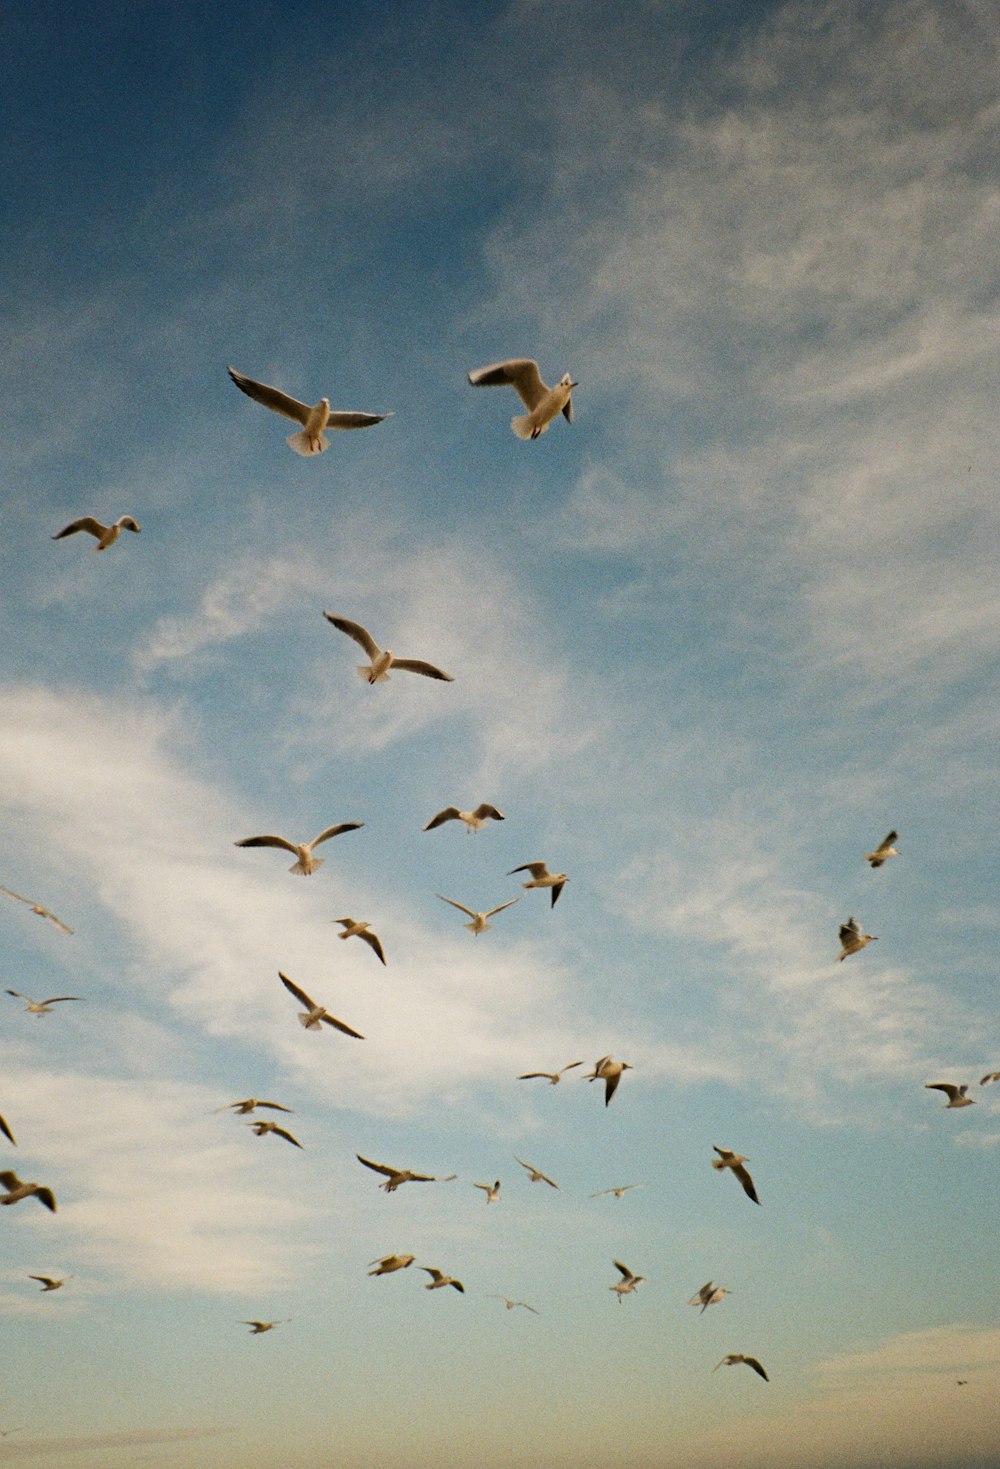 Une volée d’oiseaux volant dans un ciel bleu